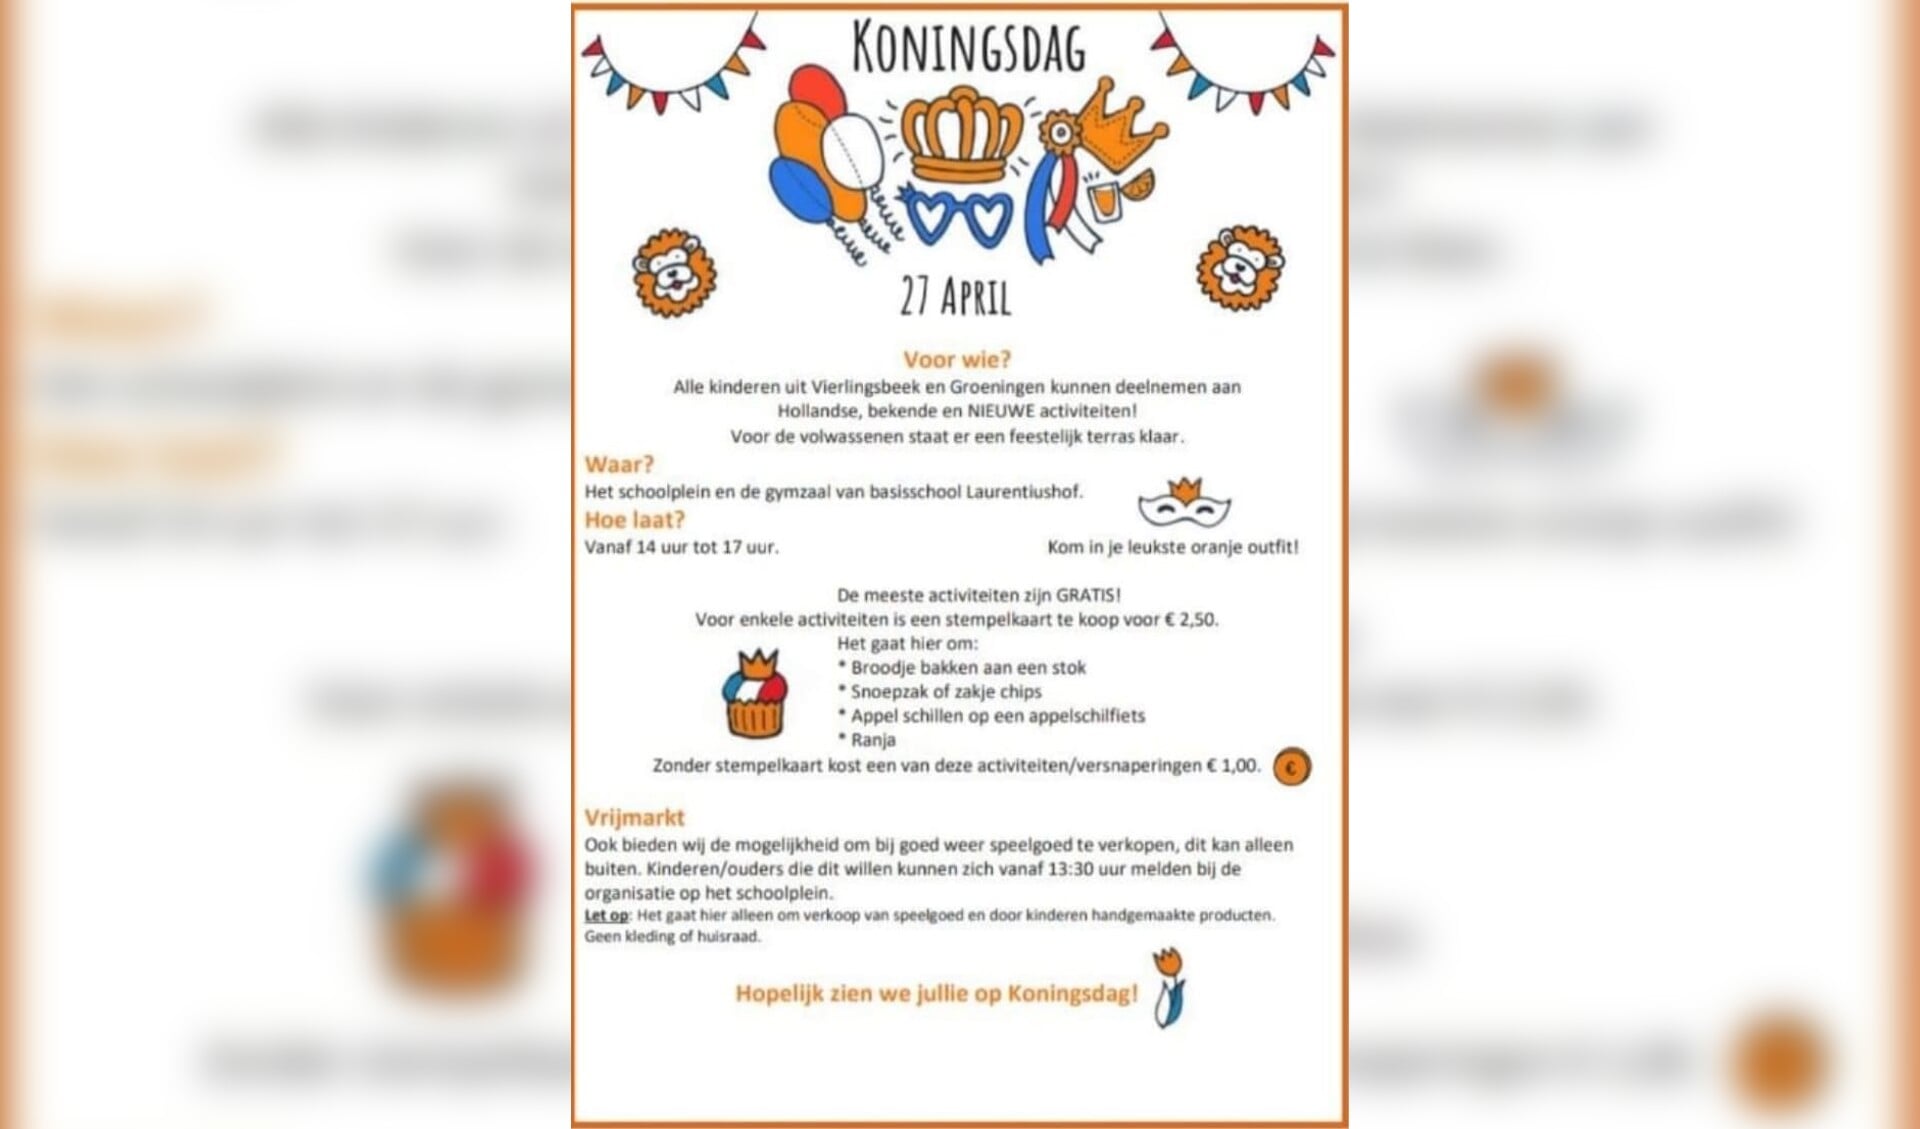 Het programma voor Koningsdag in Vierlingsbeek